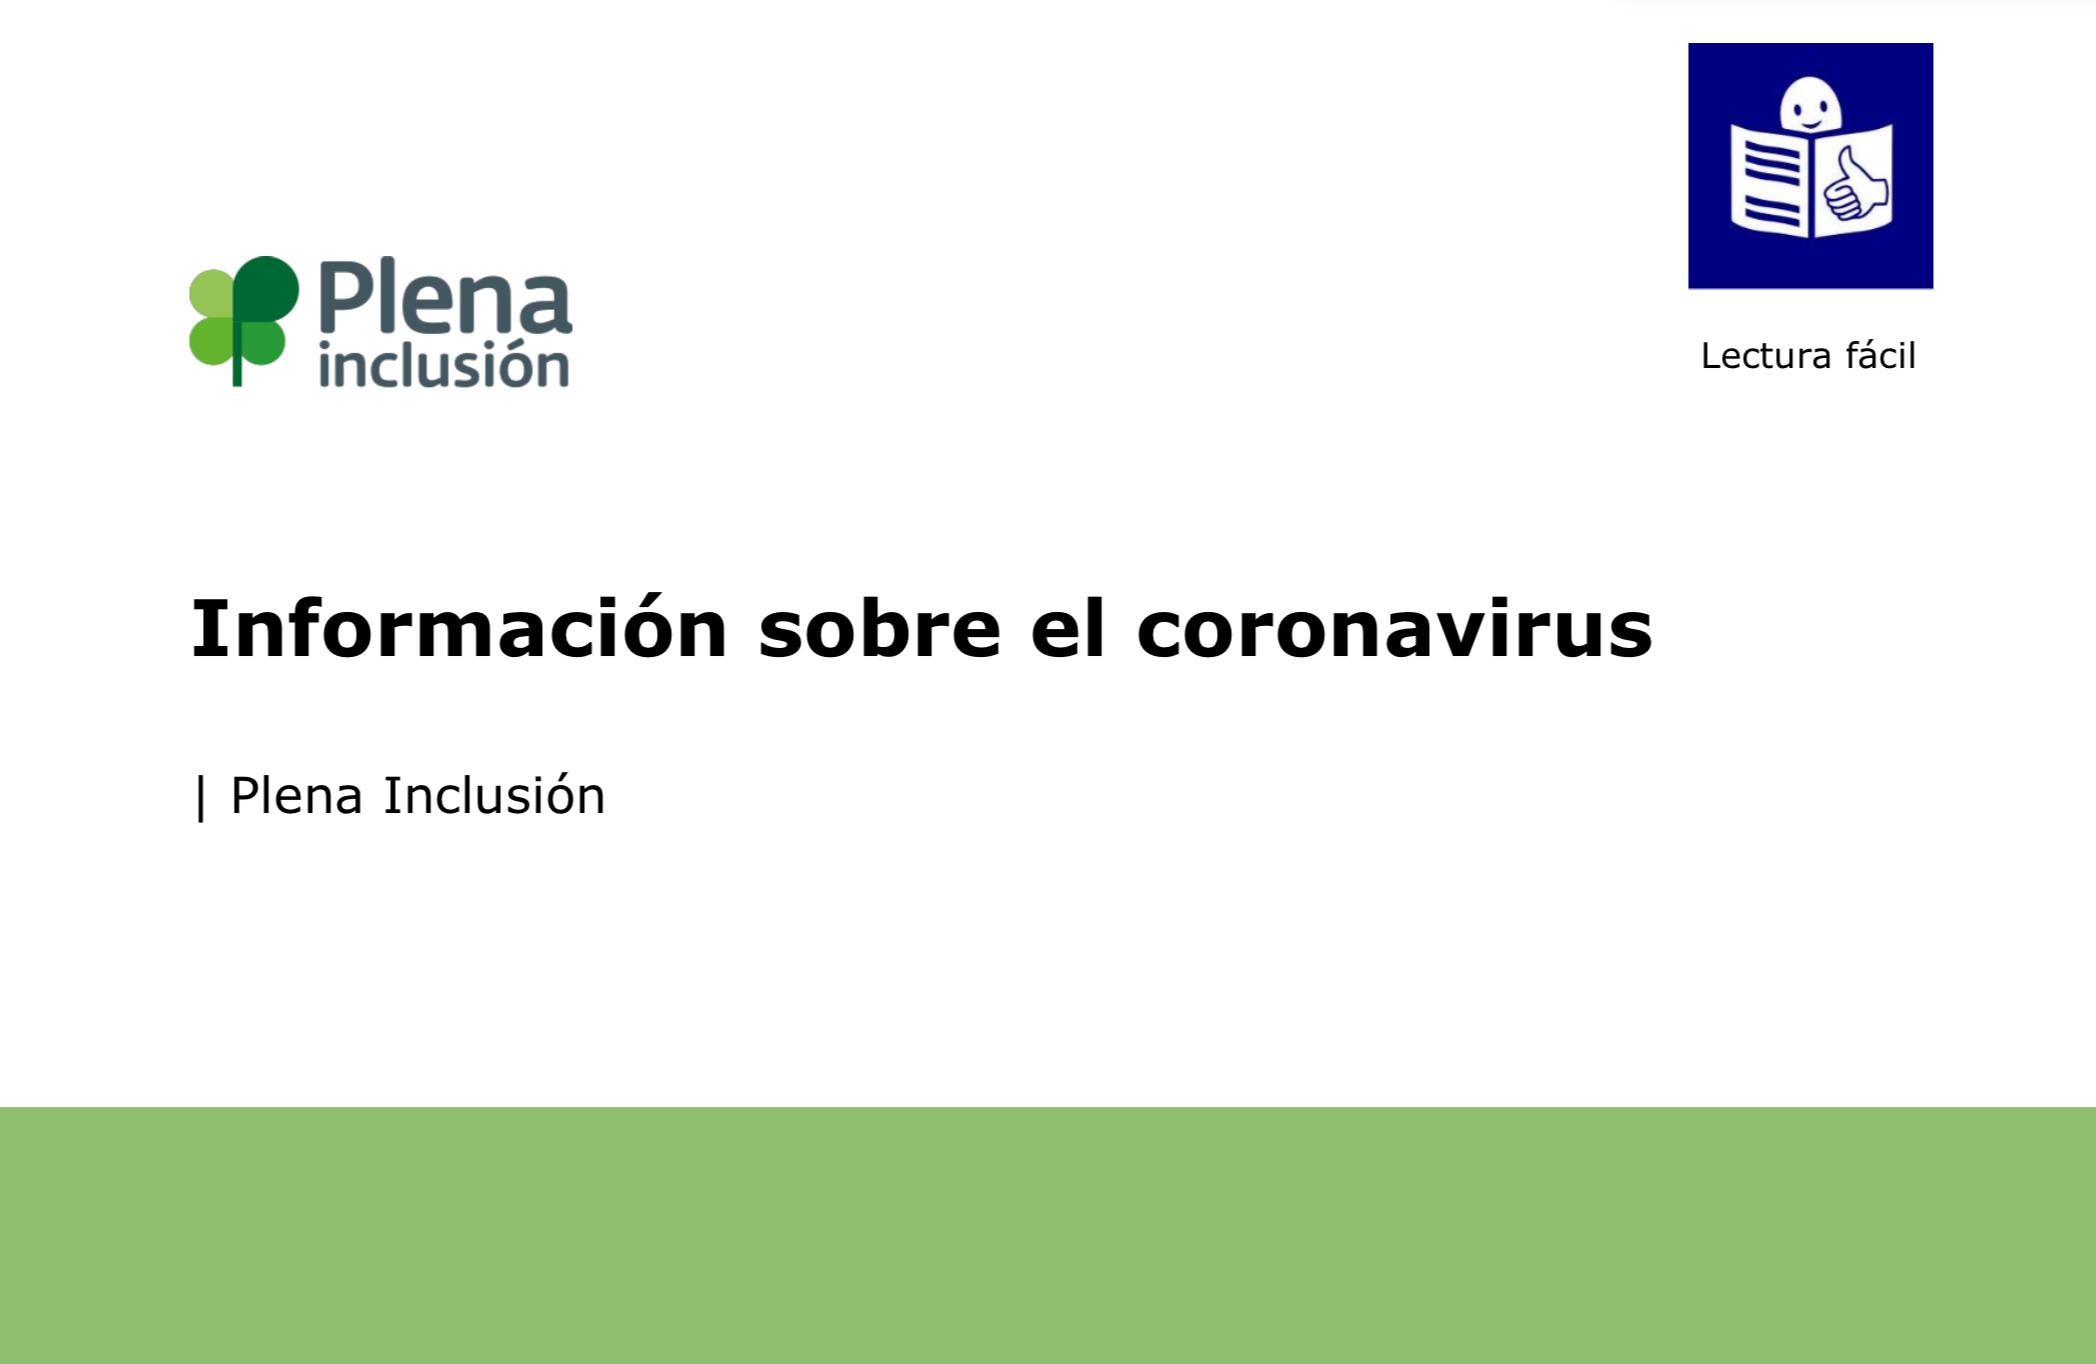 Ir a Plena inclusión adapta a lectura fácil consejos para protegerse frente al coronavirus dirigidos a la población reclusa con discapacidad intelectual